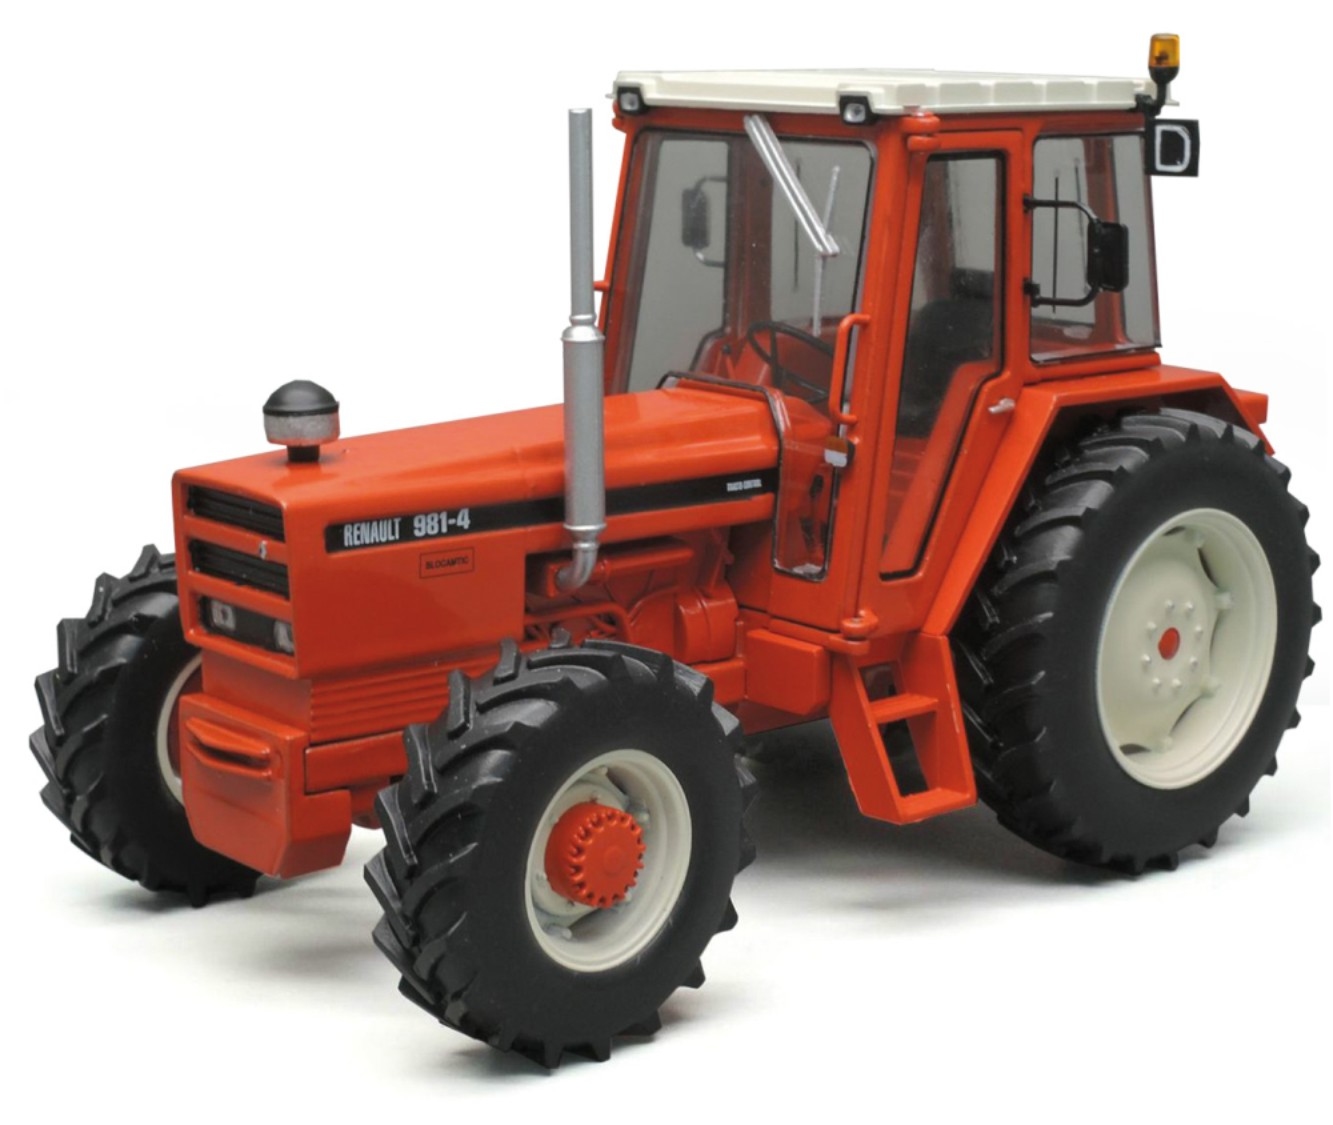 Renault 981- 4 tractor Replicagri REP125 - Schaal 1:32